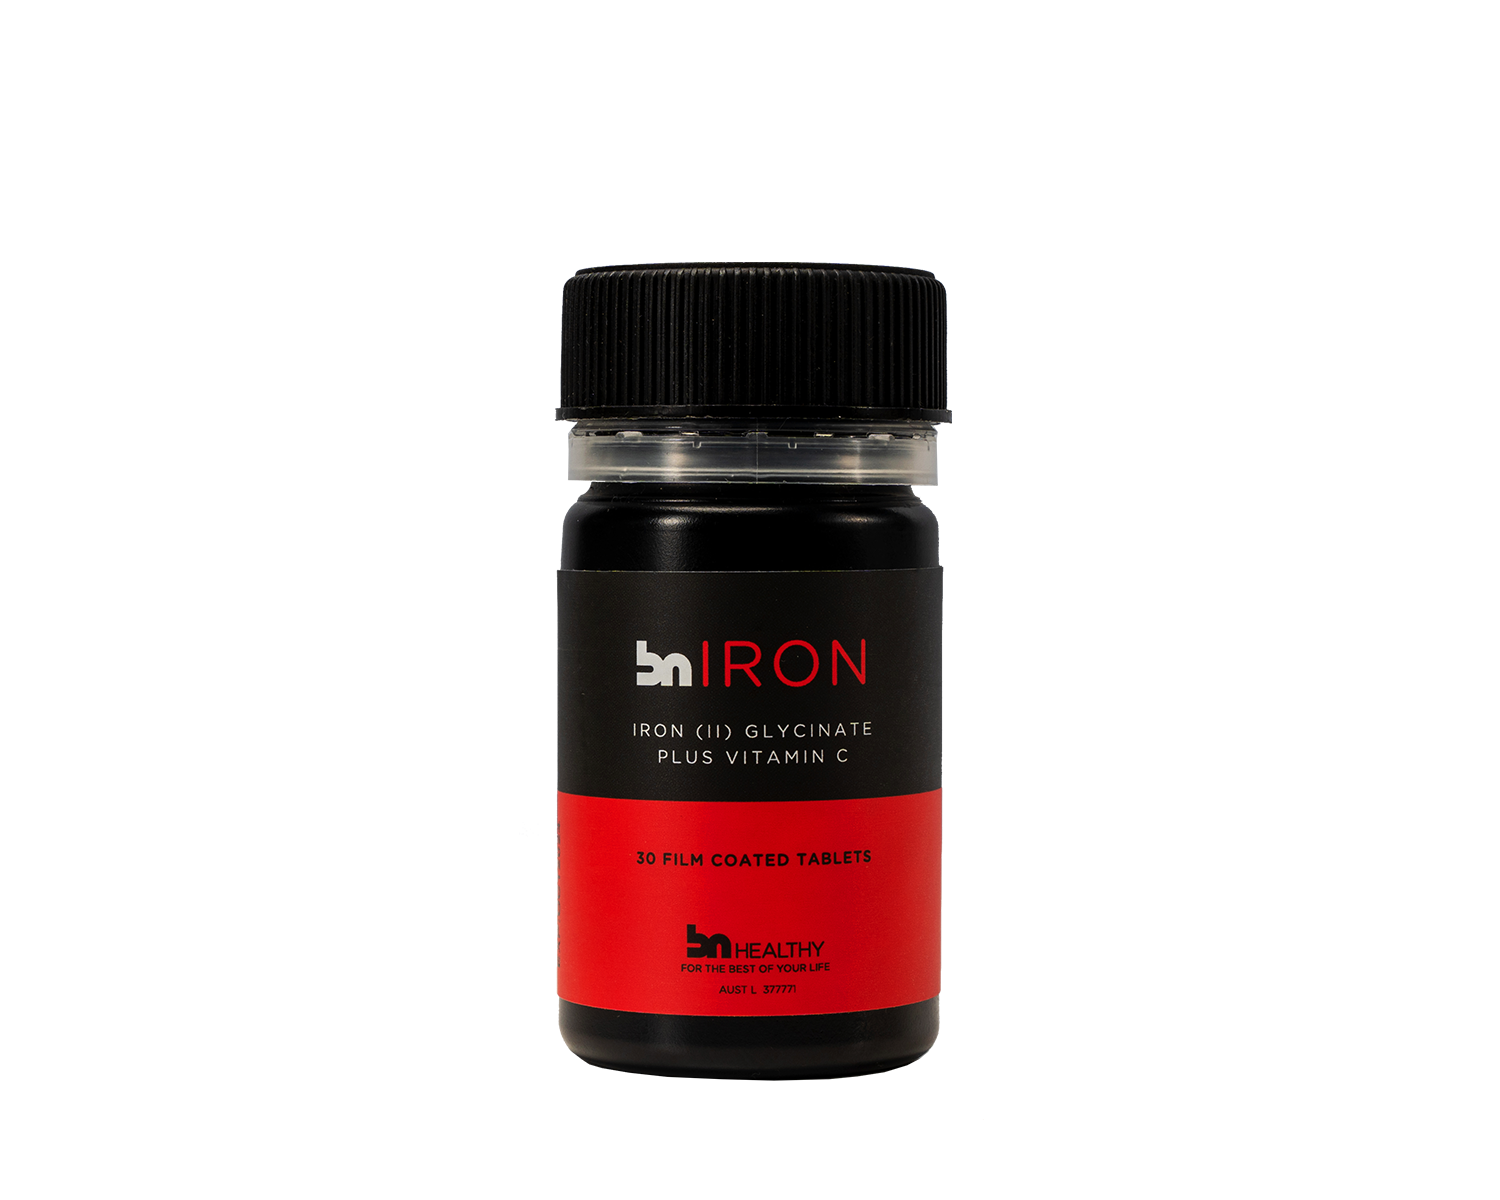 BN Iron - Iron Tablets + Vitamin C bottle